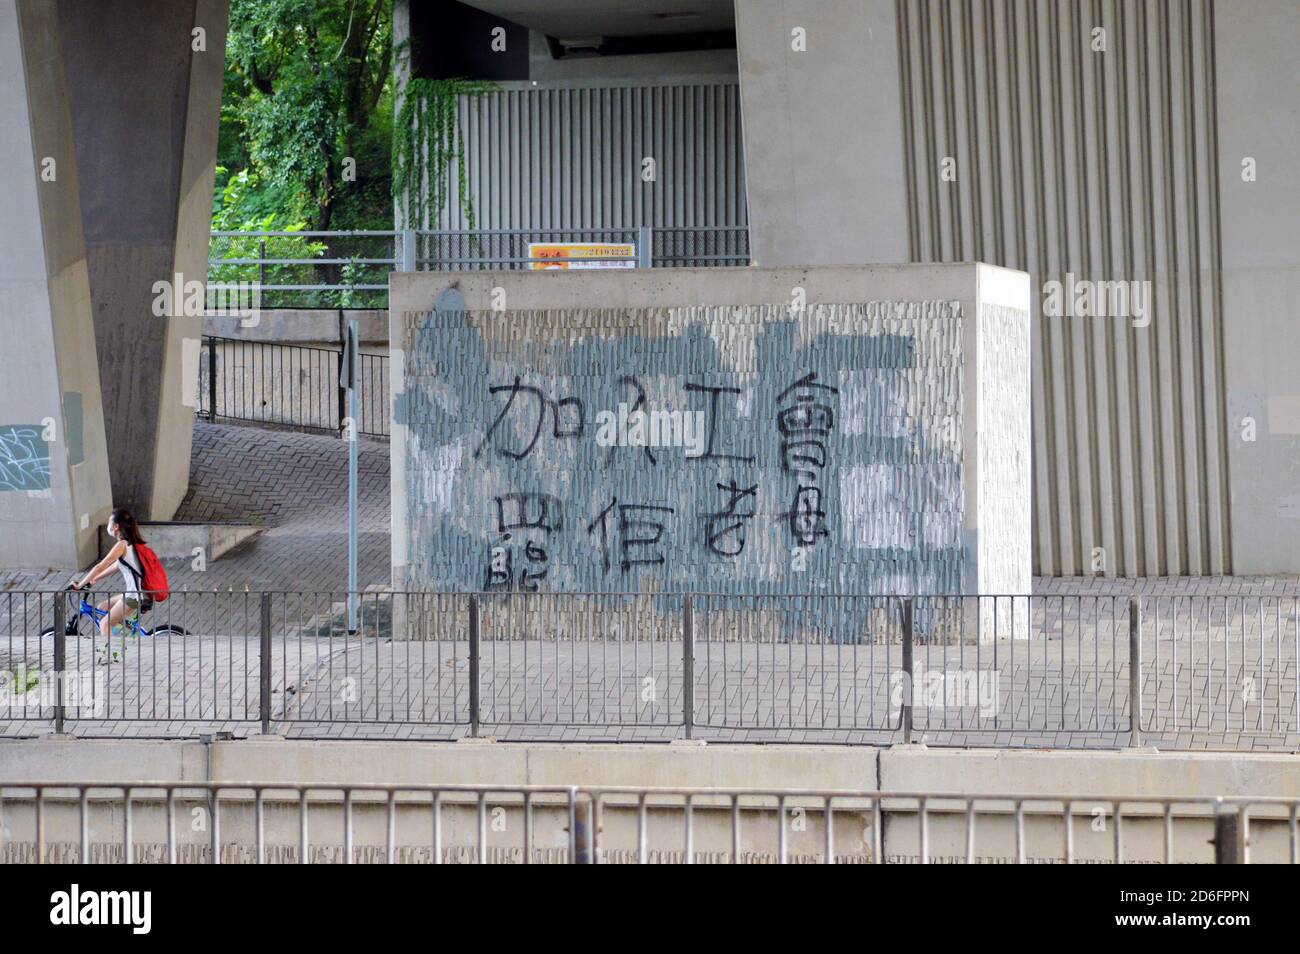 Graffiti de protestation à Yuen long, Hong Kong exhortant les citoyens à rejoindre un syndicat, 2020 Banque D'Images